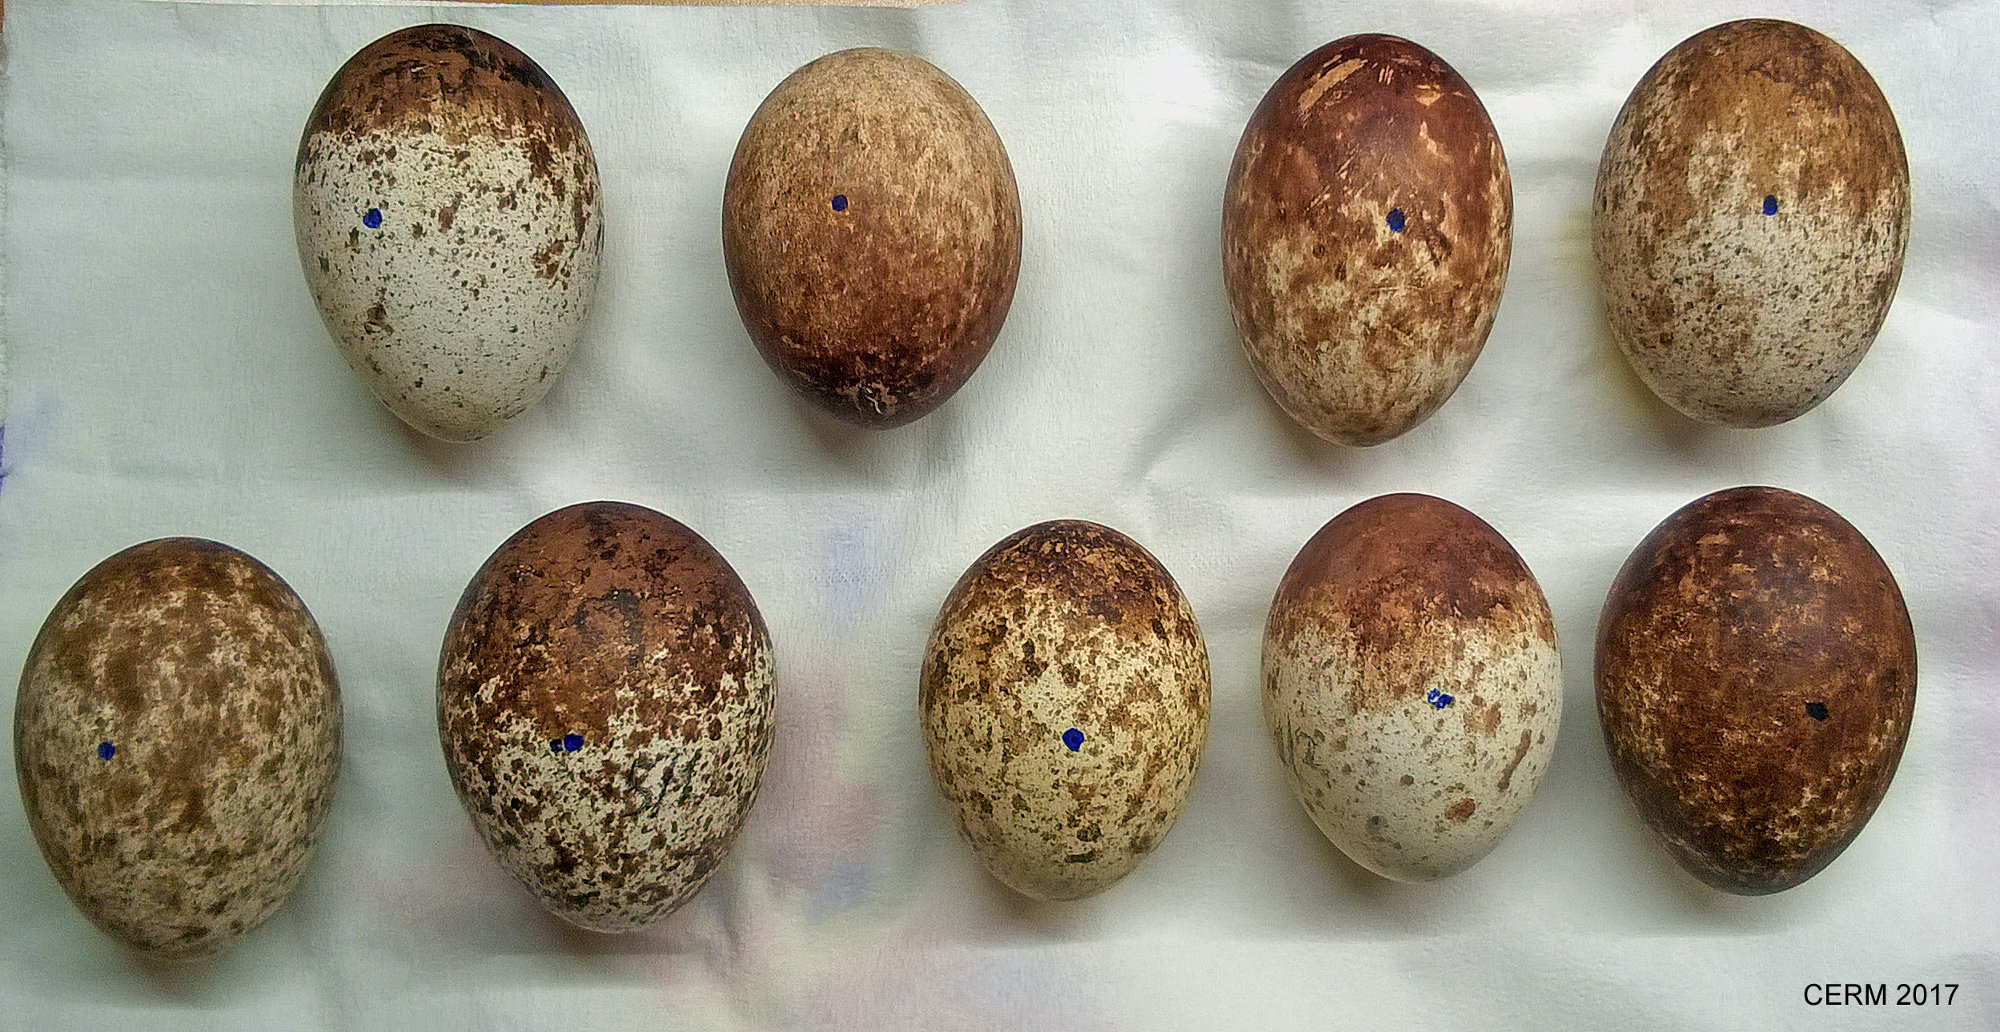 Le nove uova di capovaccaio deposte nel 2017 da 5 coppie